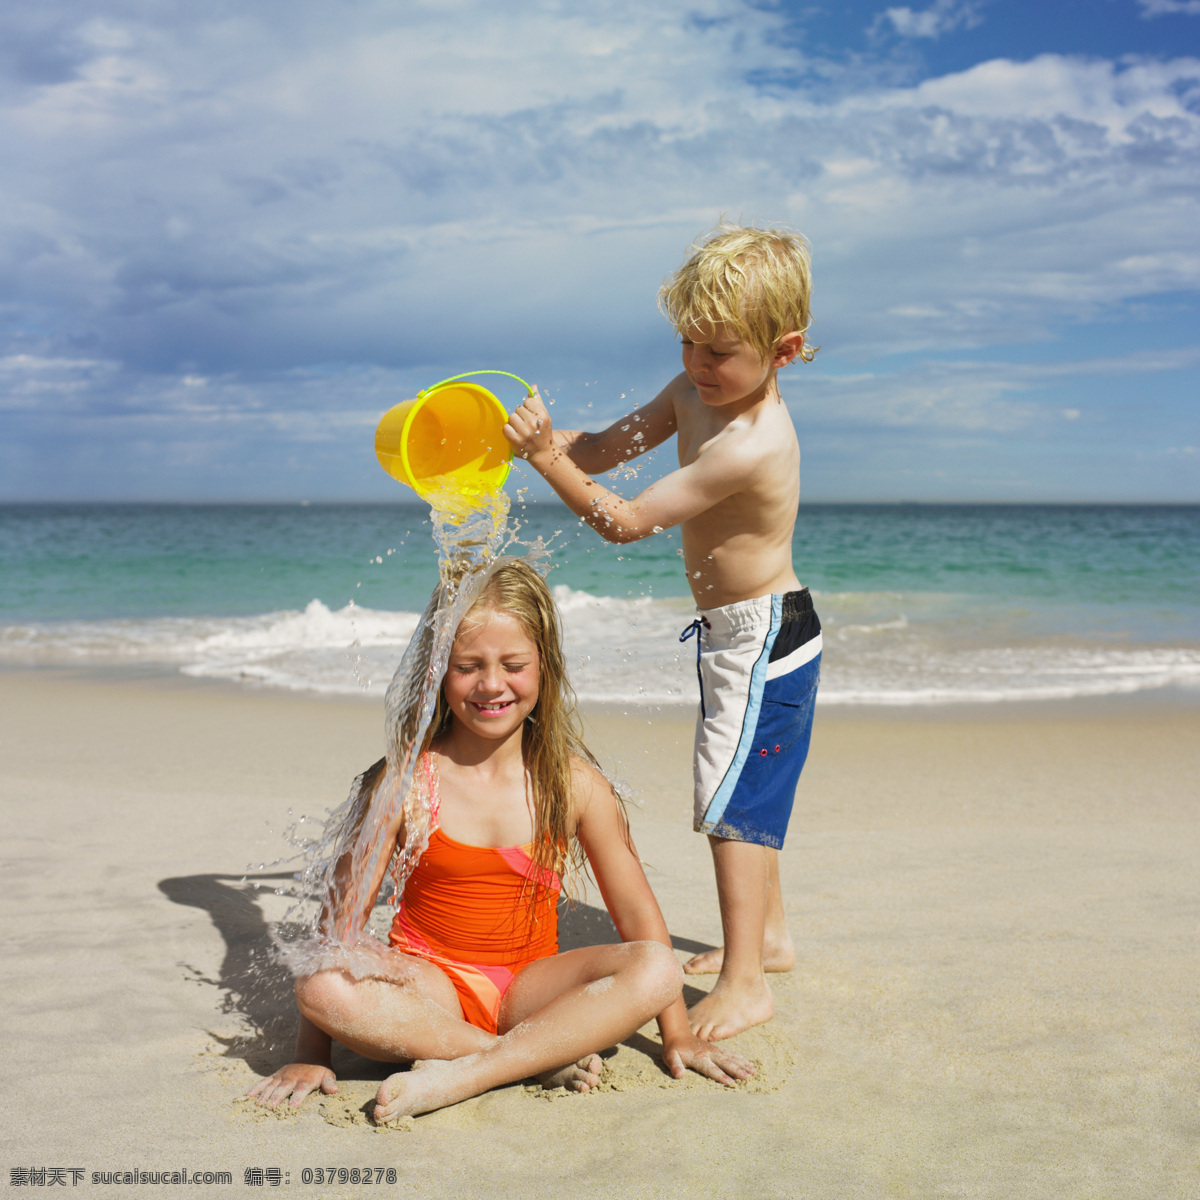 海滩 沙滩 浇水 小 姐弟 白云 儿童 儿童幼儿 孩子 海洋 蓝天 滩 洗头 小女孩 小男孩 小学生主题 人物图库